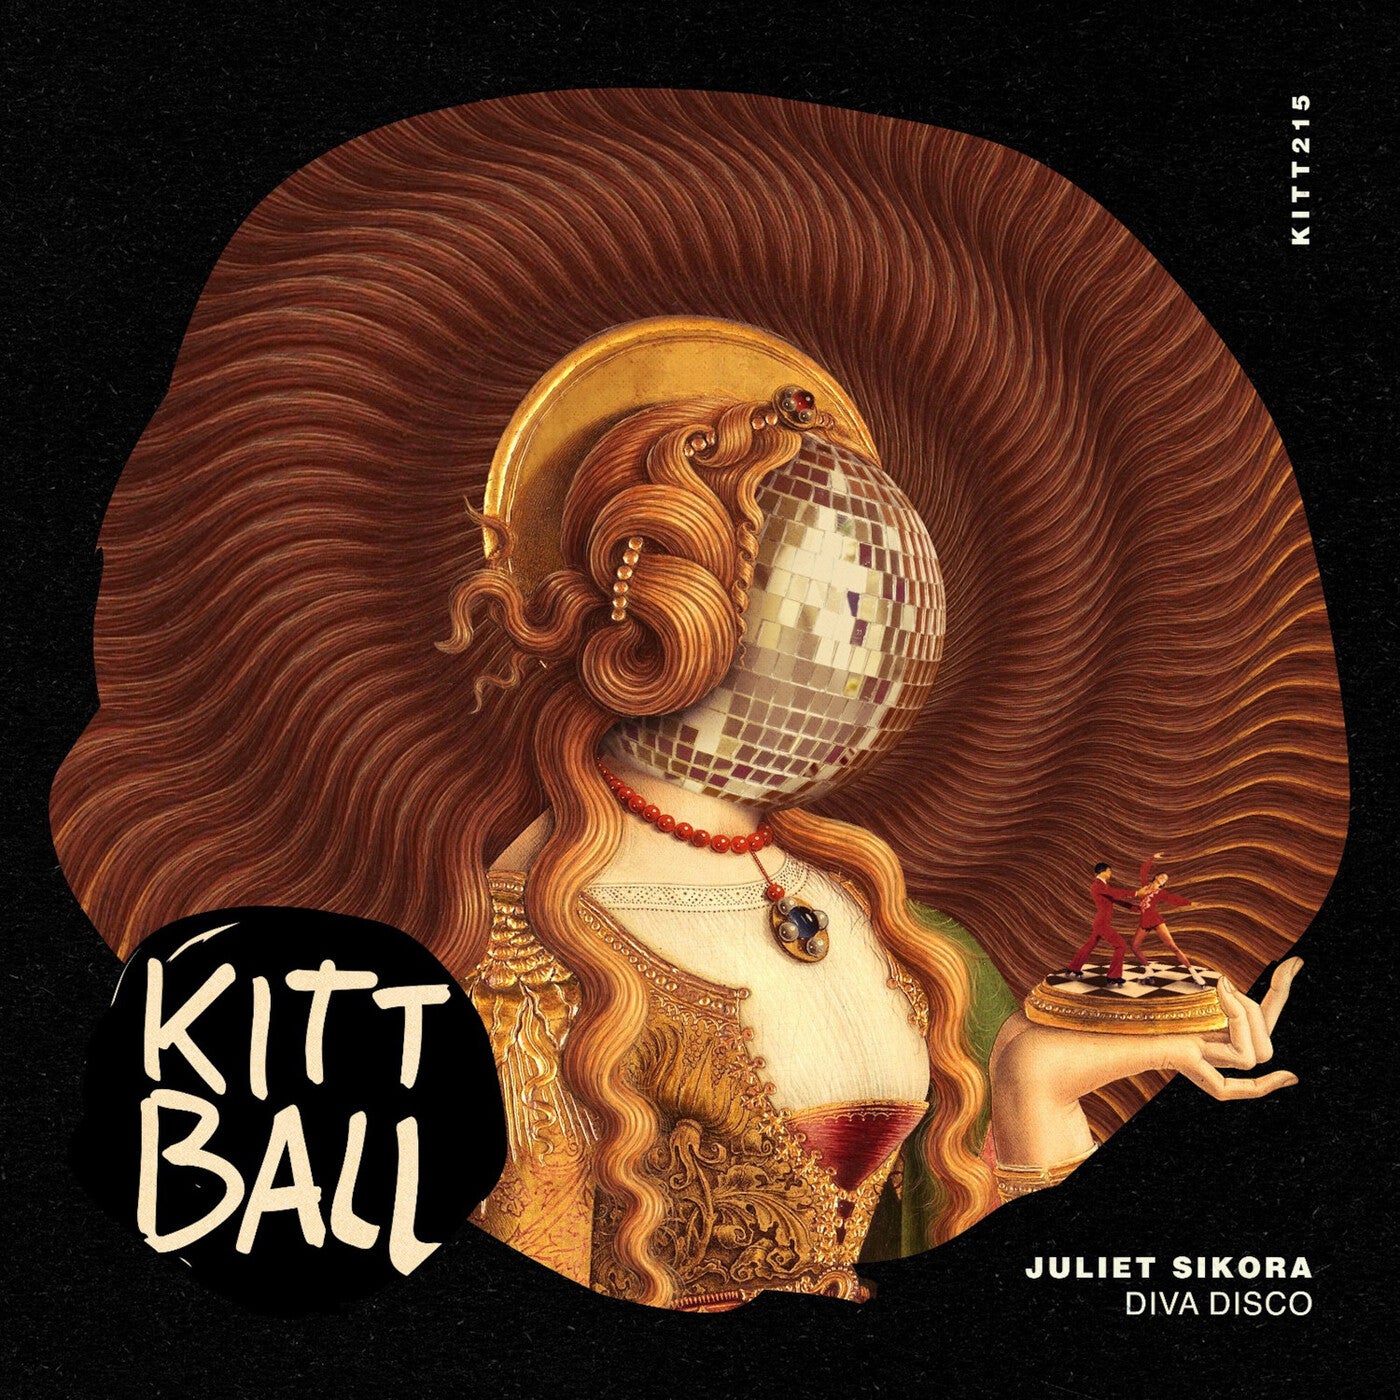 image cover: Juliet Sikora - Diva Disco / KITT215